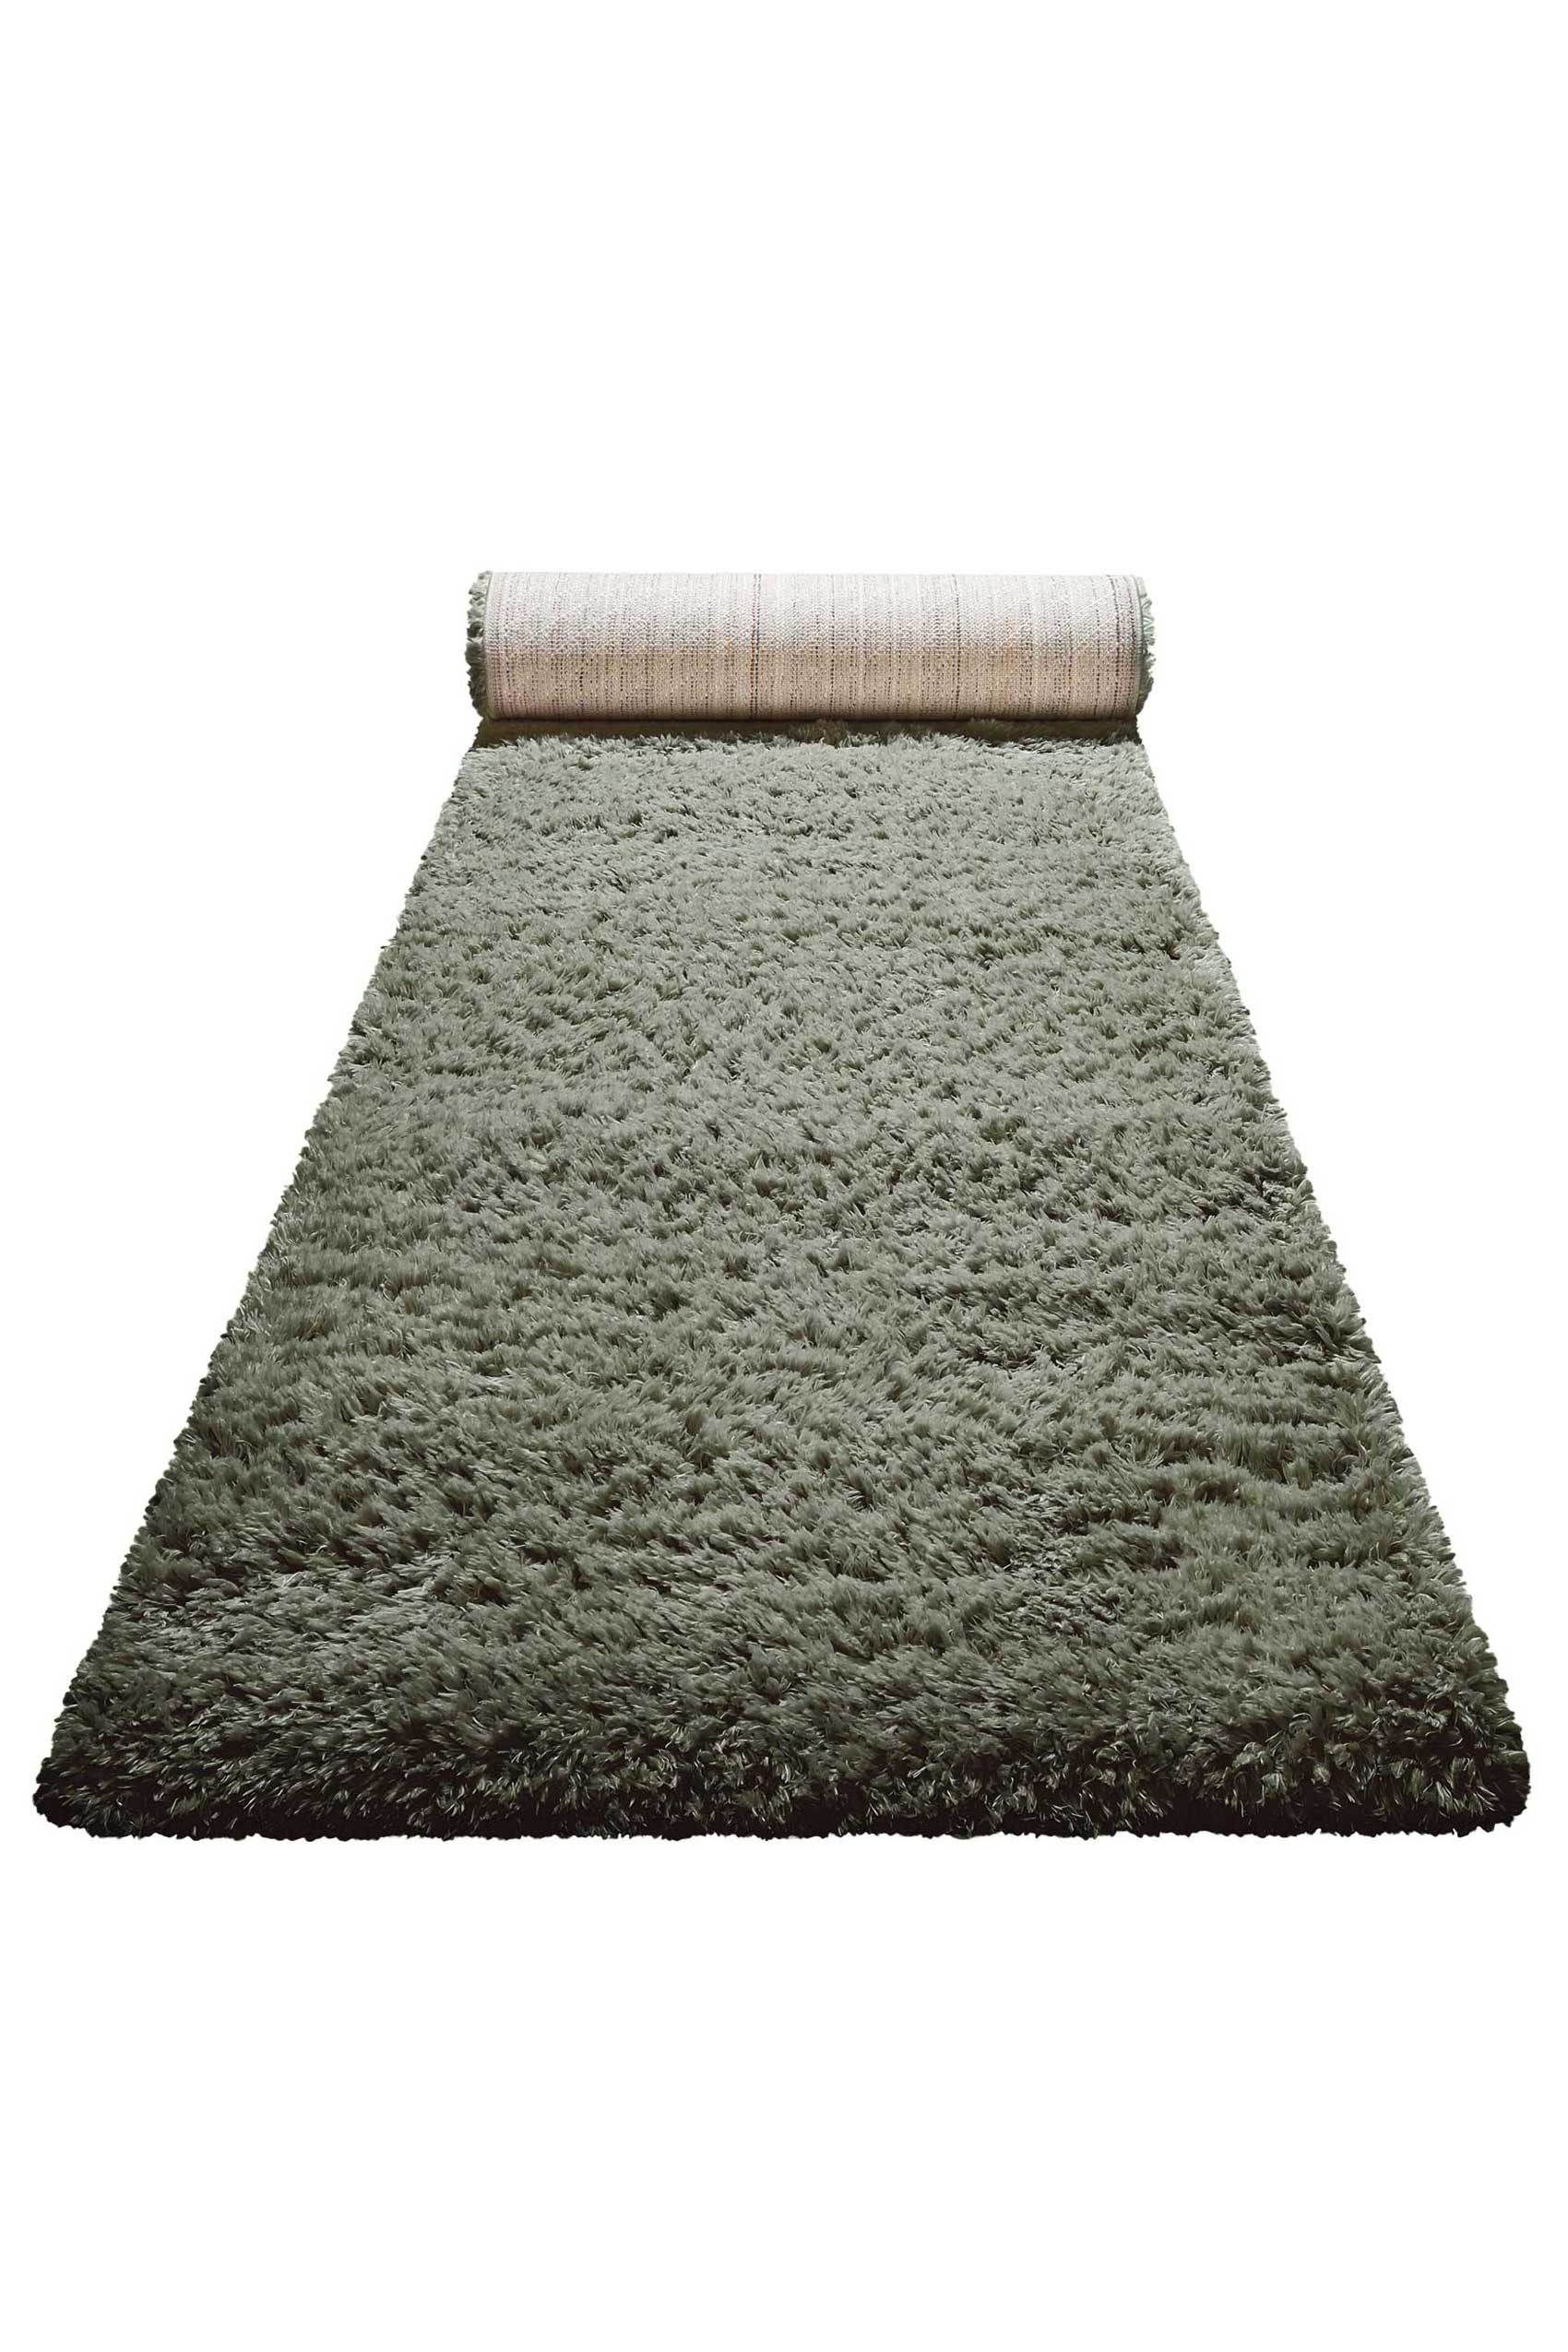 Nachhaltiger Teppich Grün soft & weich » Matteo « Homie Living - Ansicht 5